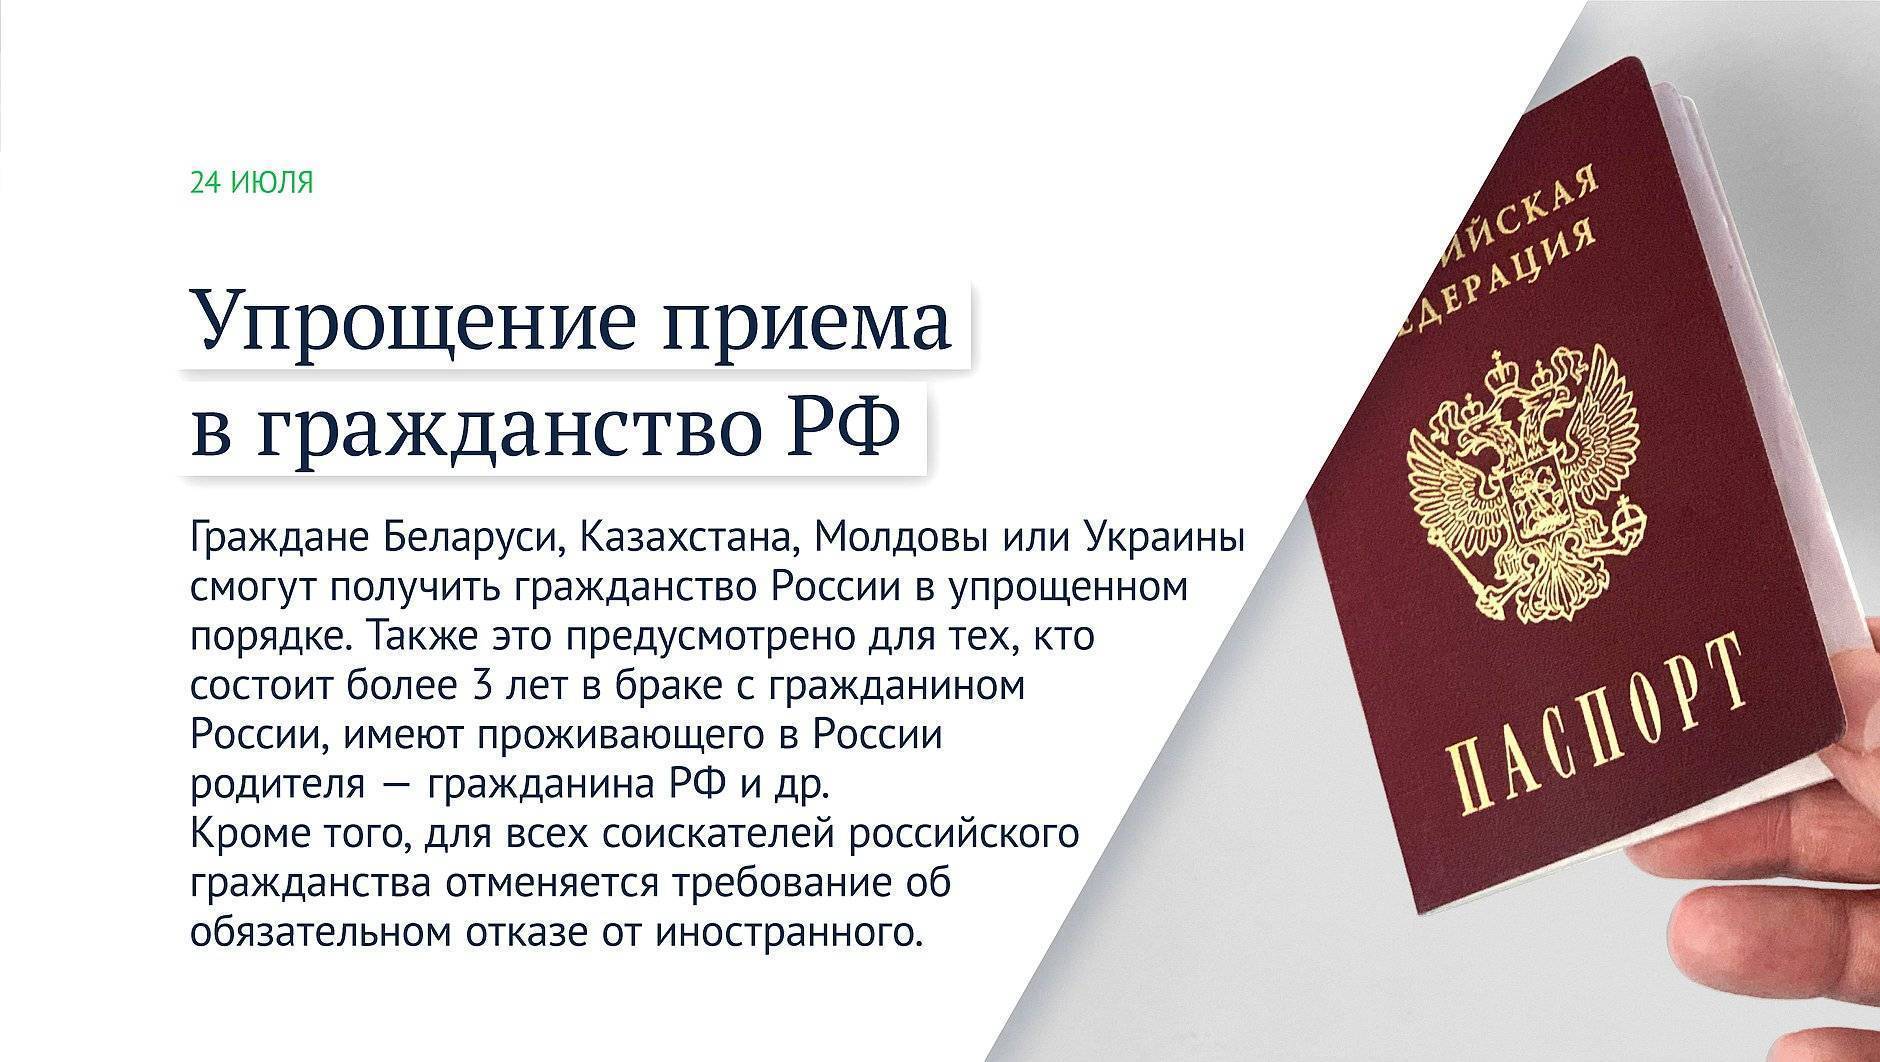 Как получить гражданство рф гражданину молдовы в 2020 году: какие документы нужны?